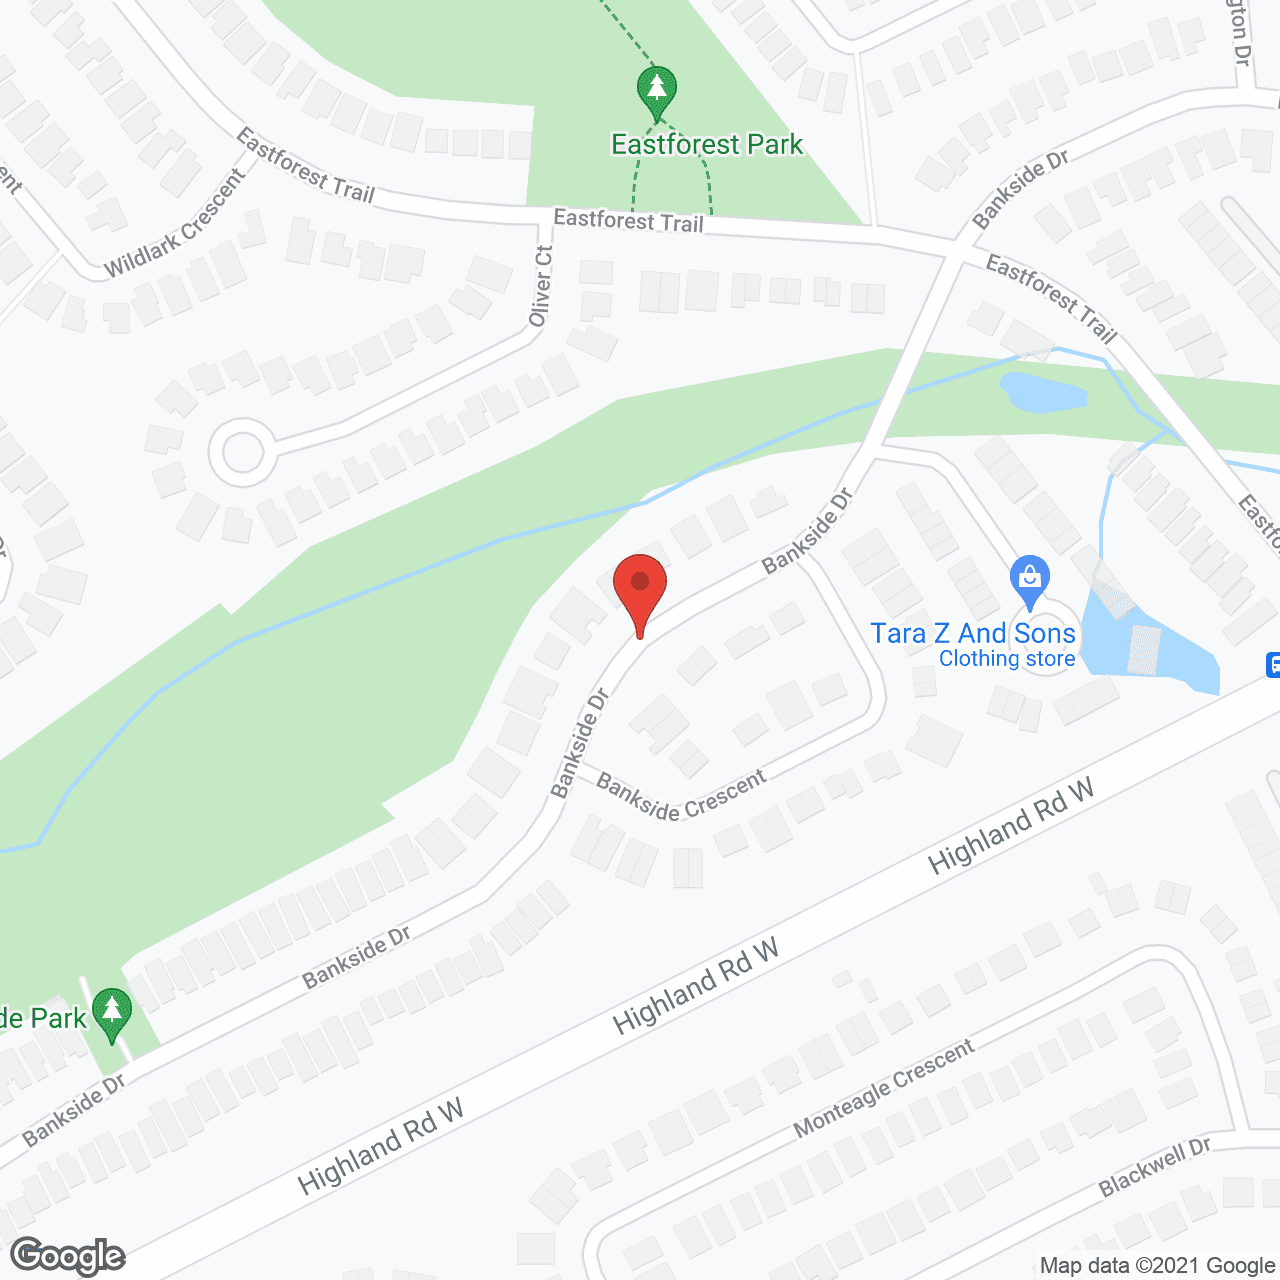 Bankside Terrace in google map